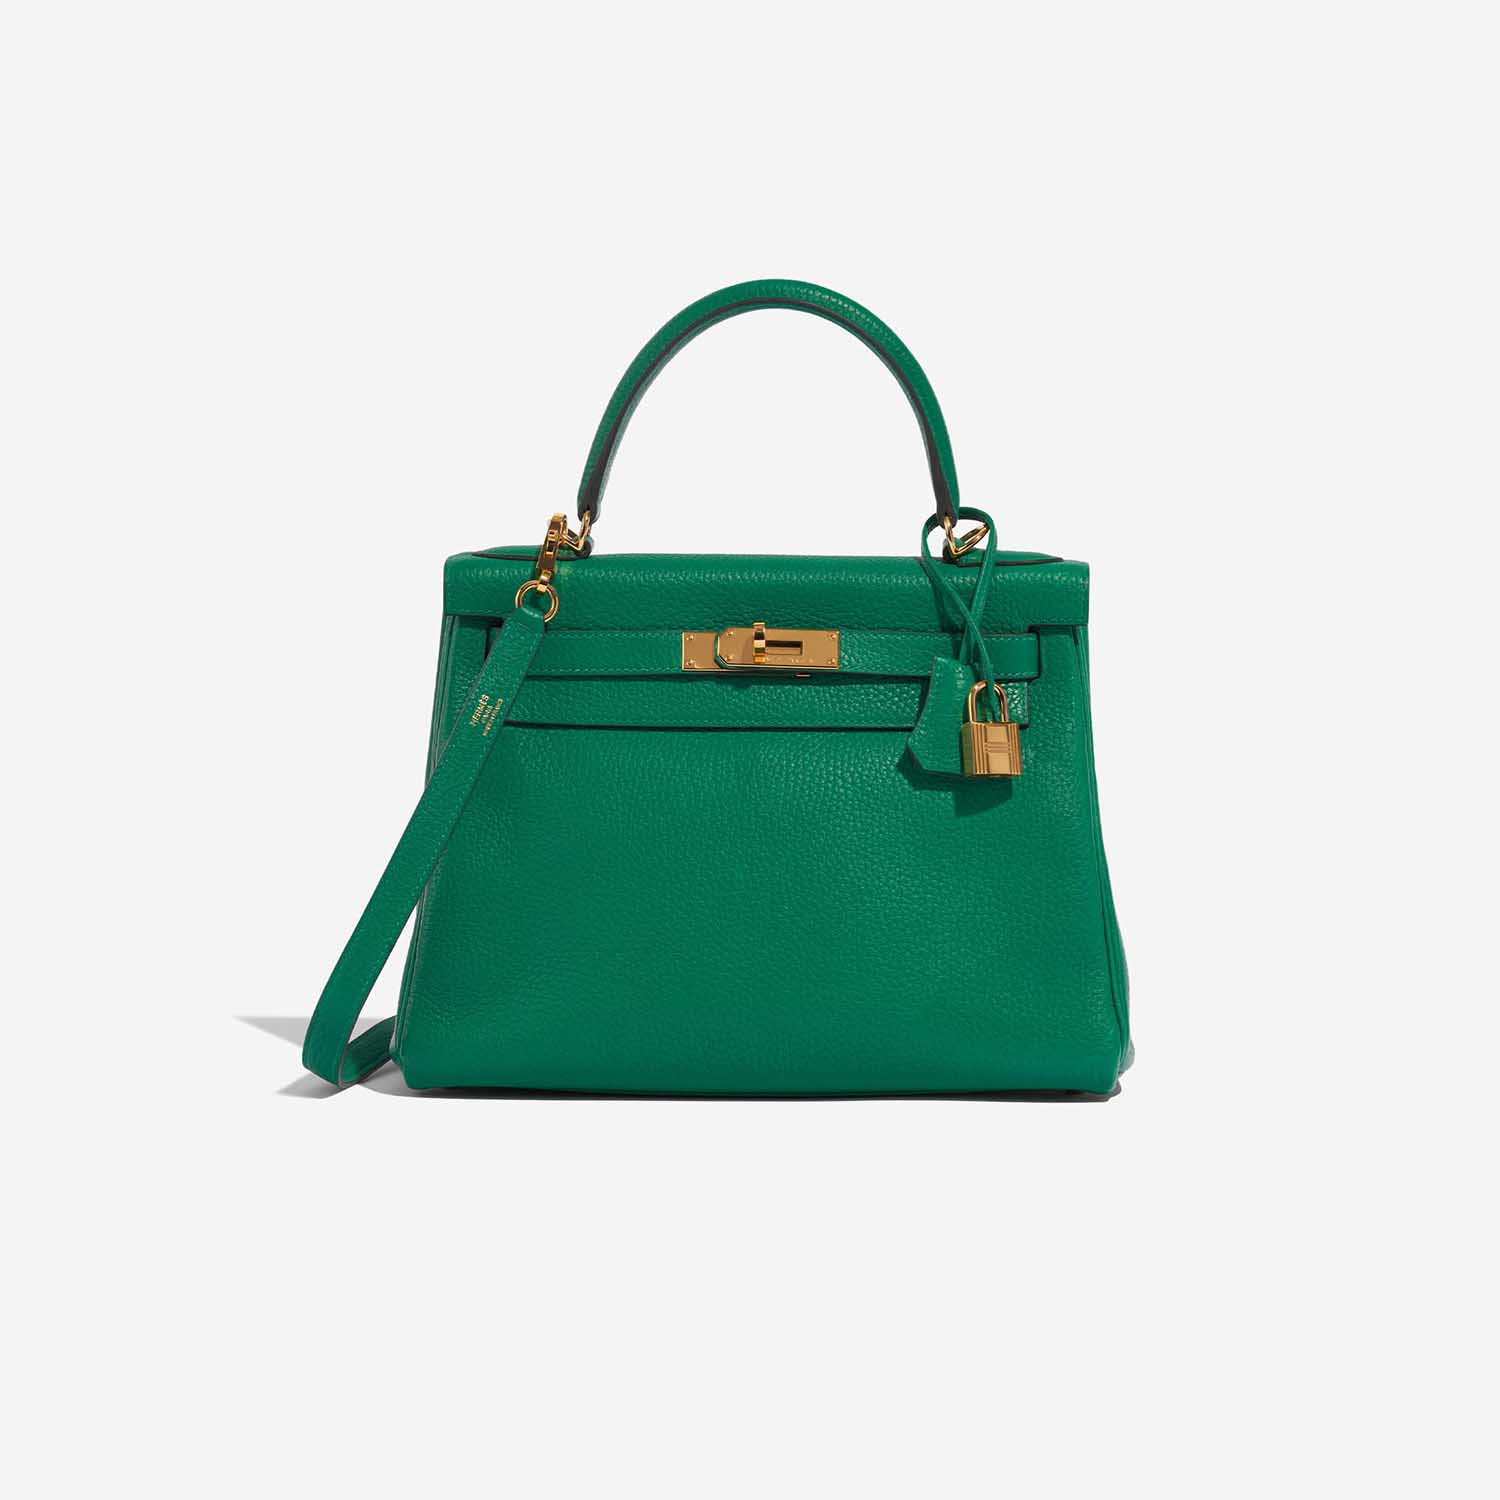 Pre-owned Hermès Tasche Kelly 28 Togo Vert Menthe Grün Front | Verkaufen Sie Ihre Designer-Tasche auf Saclab.com